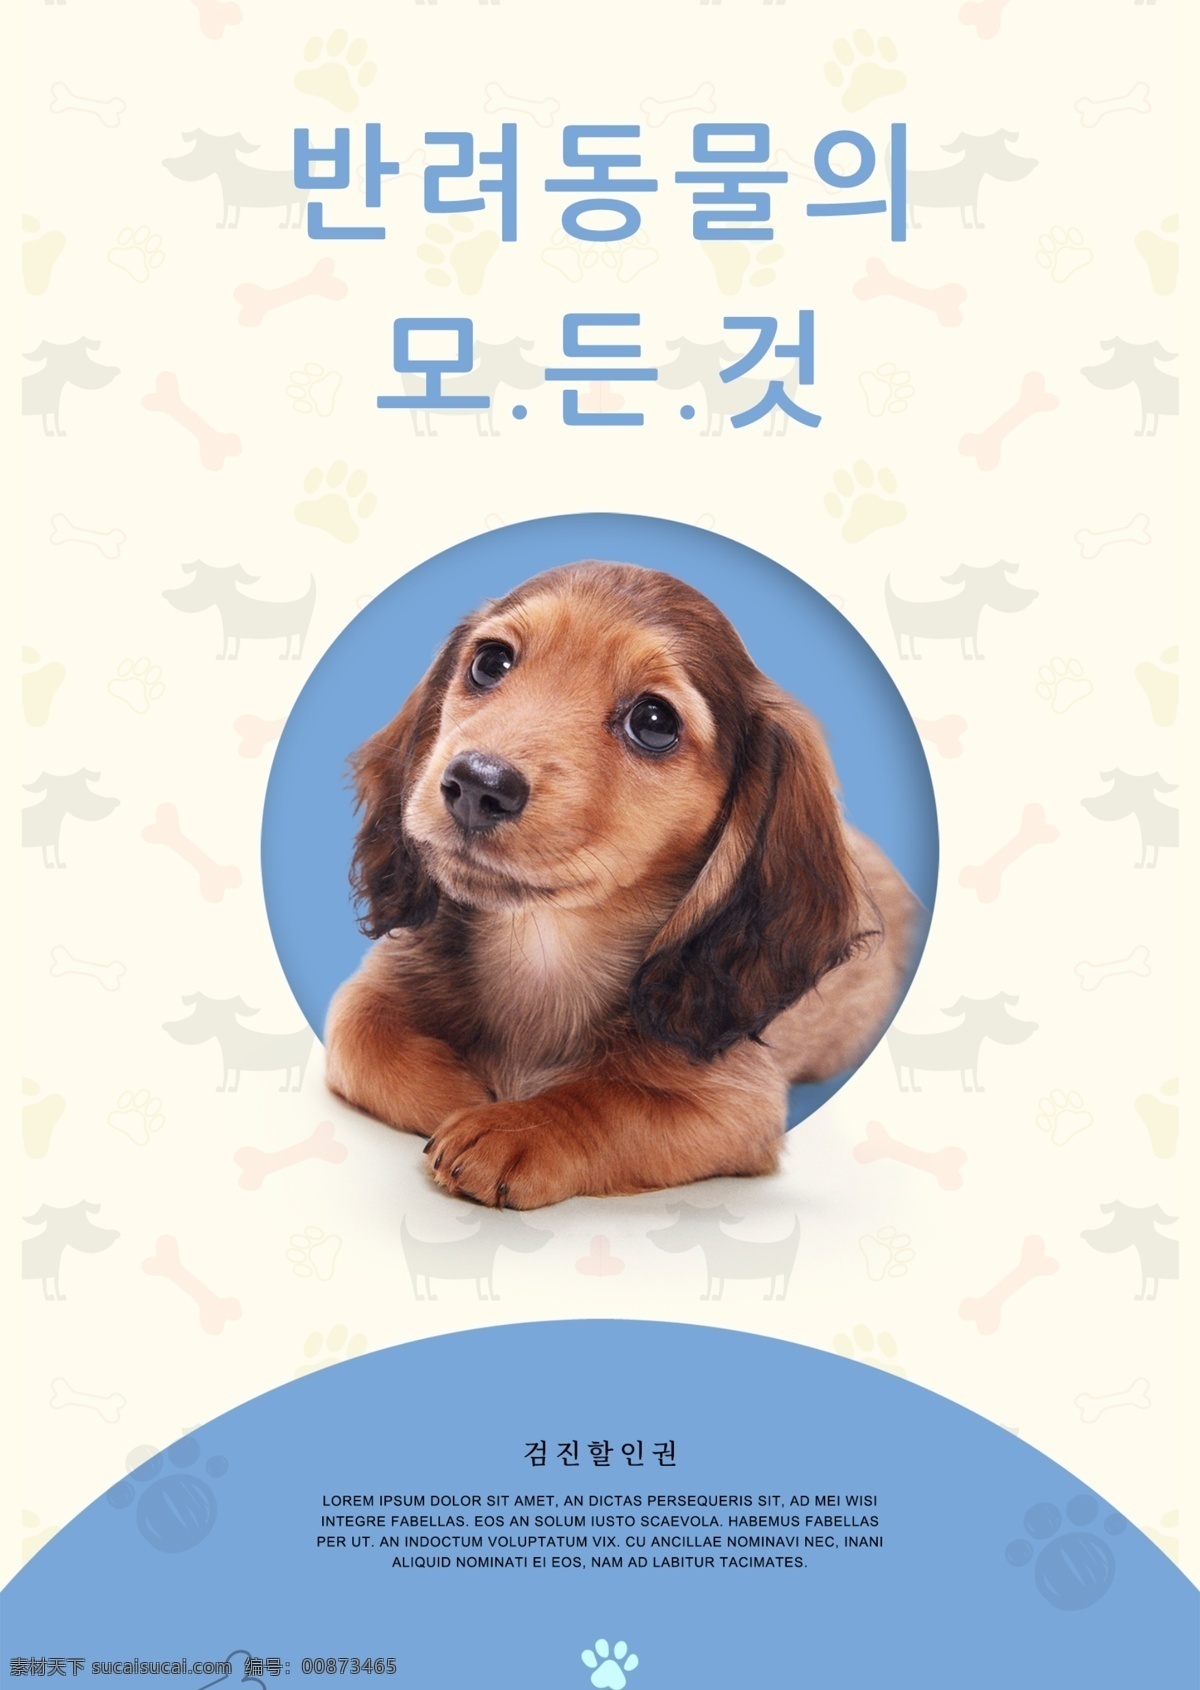 新鲜 简单 宠物 店 宣传海报 谈谈关于 简单的海报 宠物商店 可爱的狗 海报 动物 爱宠物 宠物系列 宠物广告 溺爱